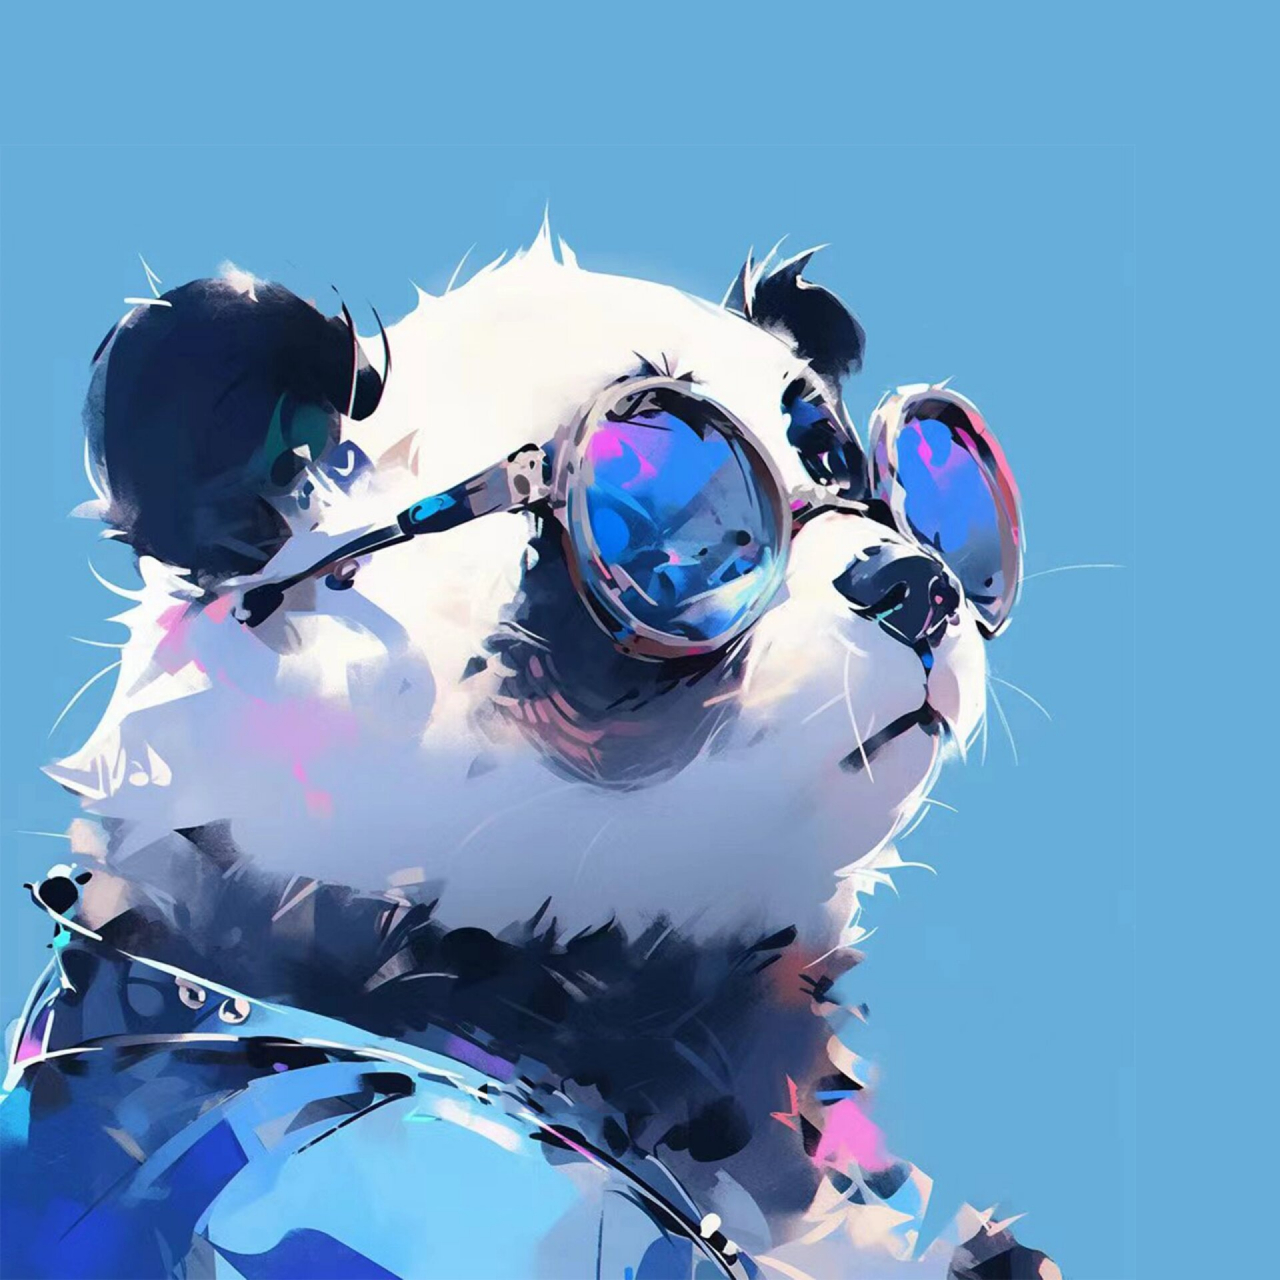 戴眼镜的熊猫头像图片